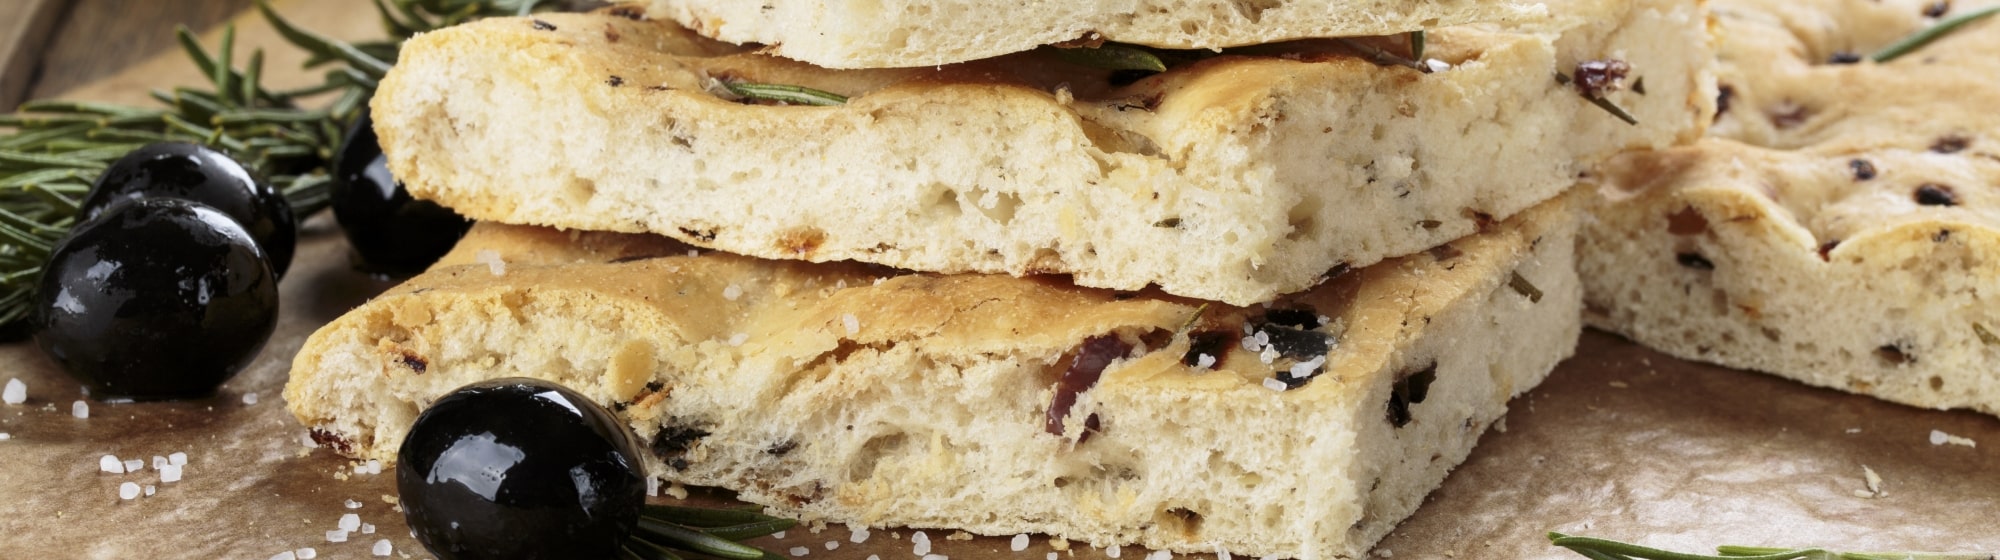 Image de la foccacia di recco, pain italien avec olives